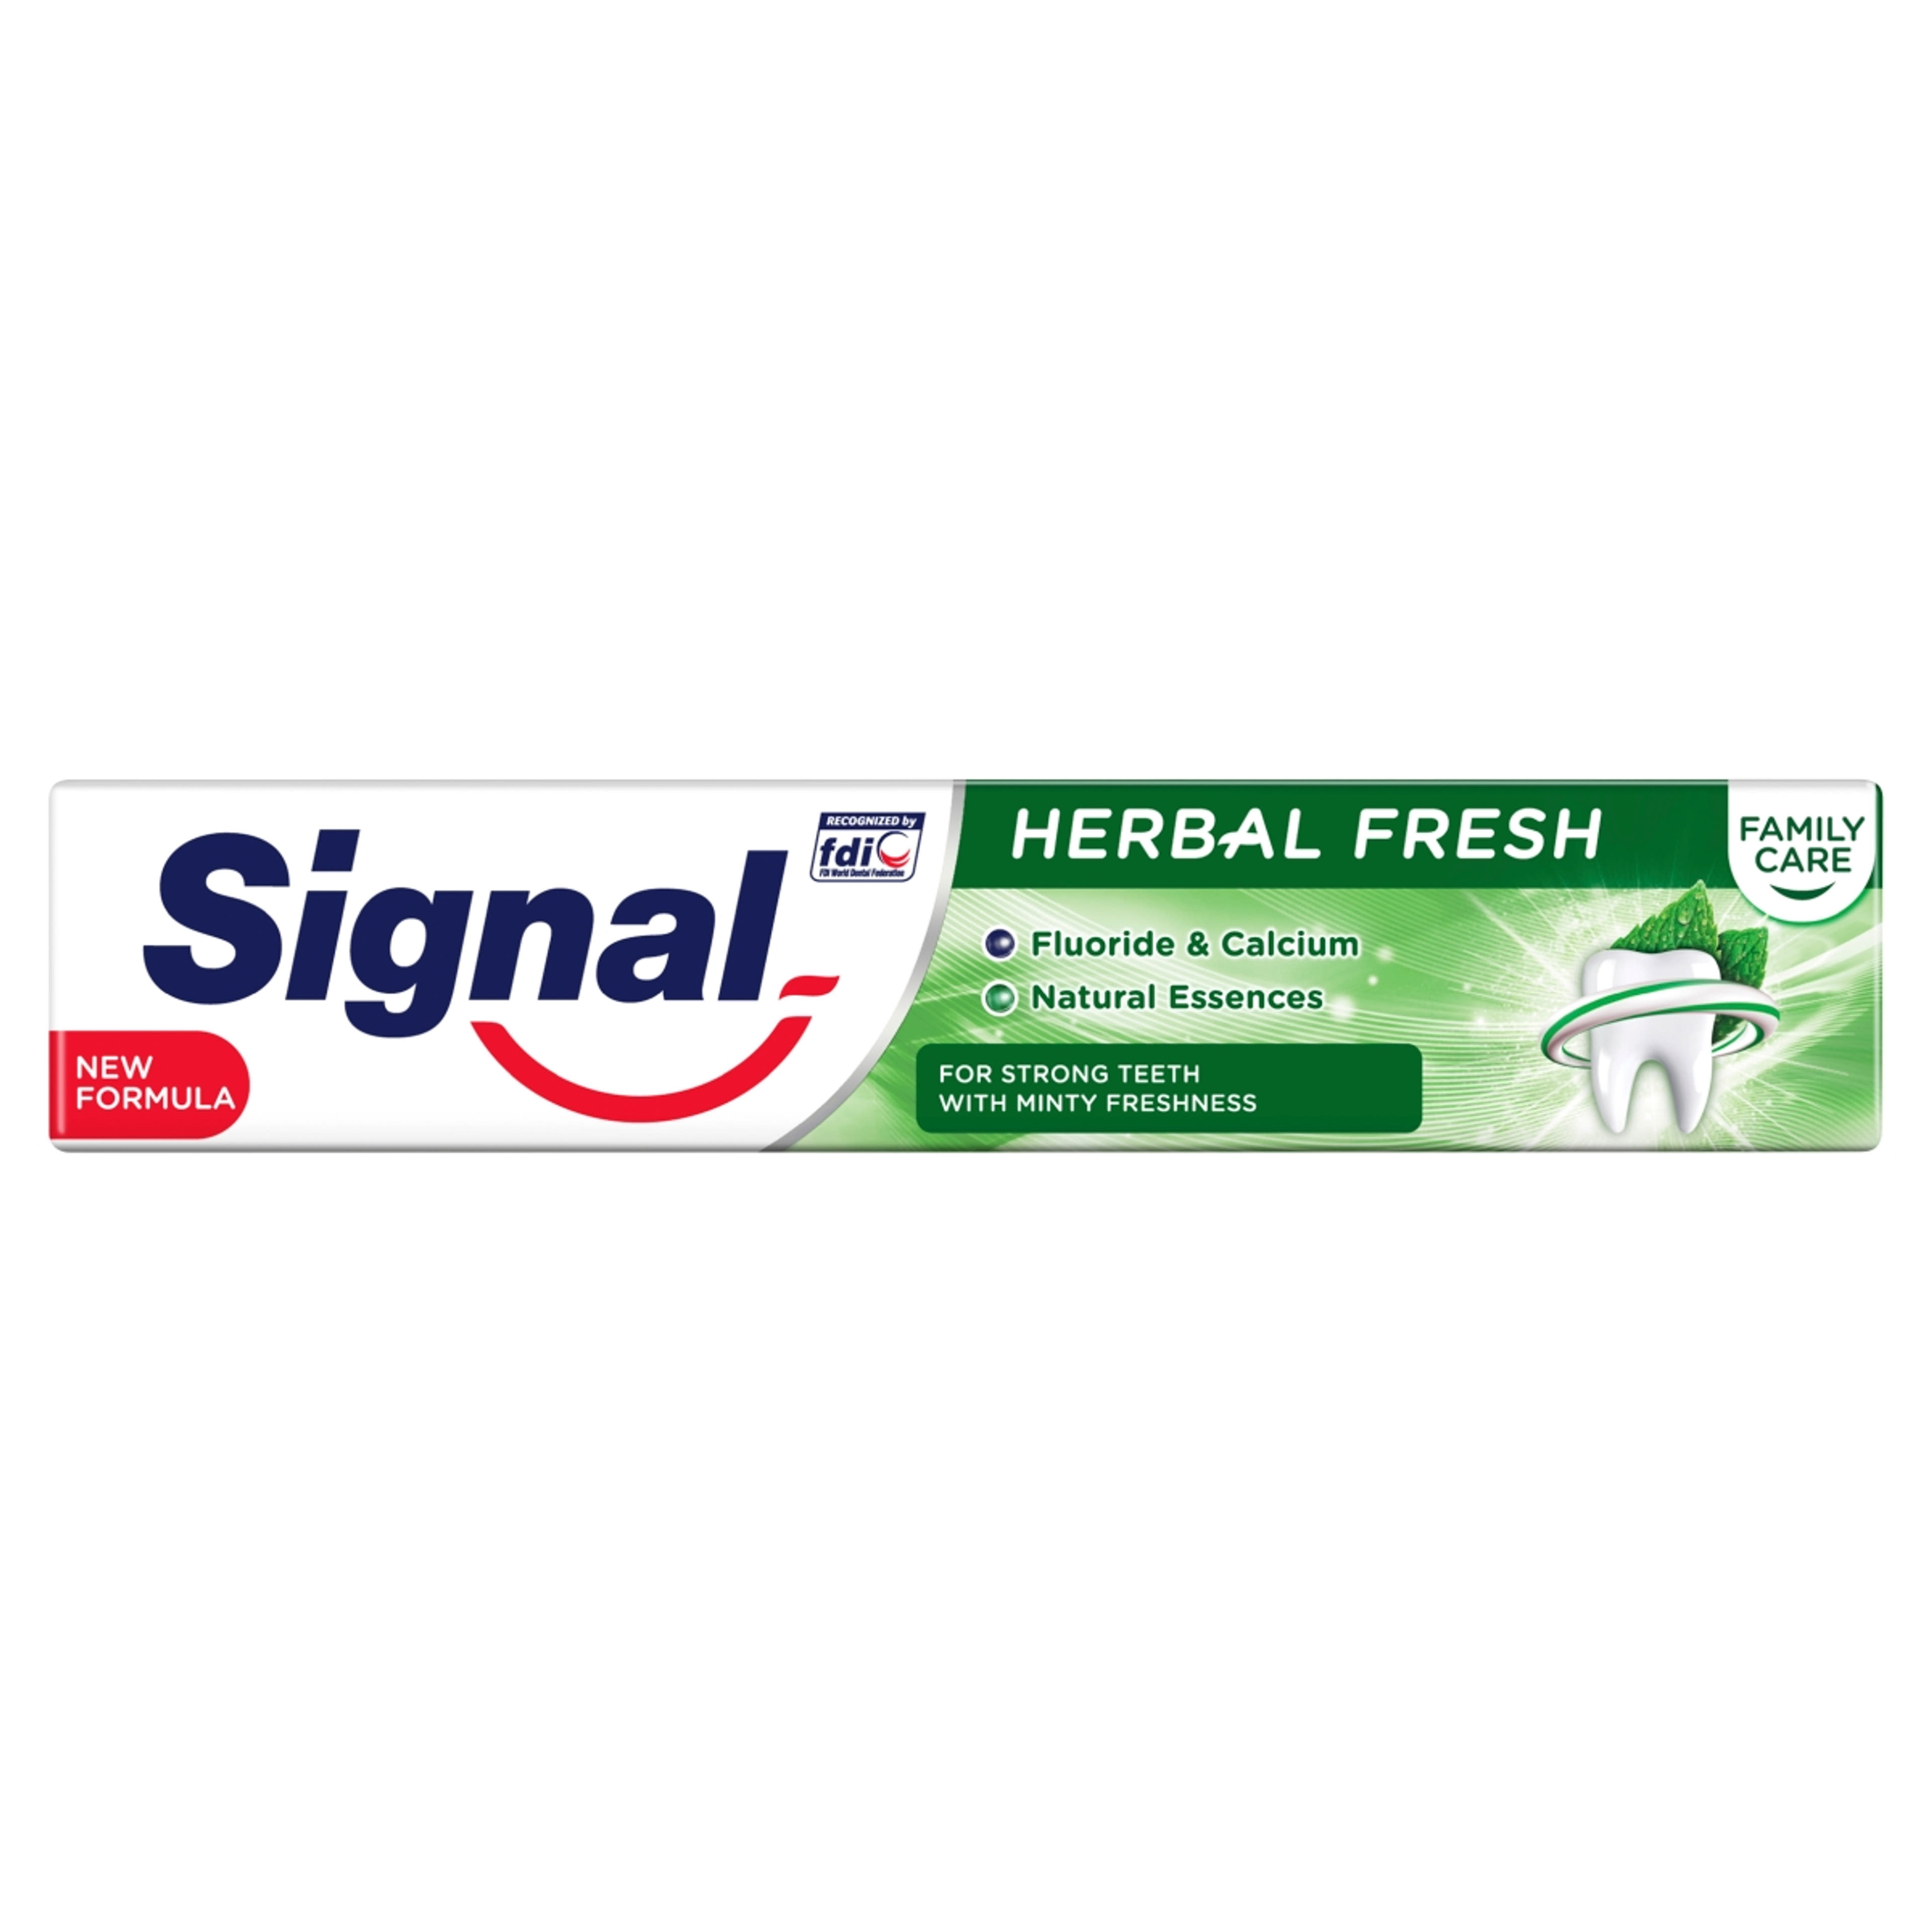 Signal Family Care Herbal Fresh fogkrém - 75 ml-1